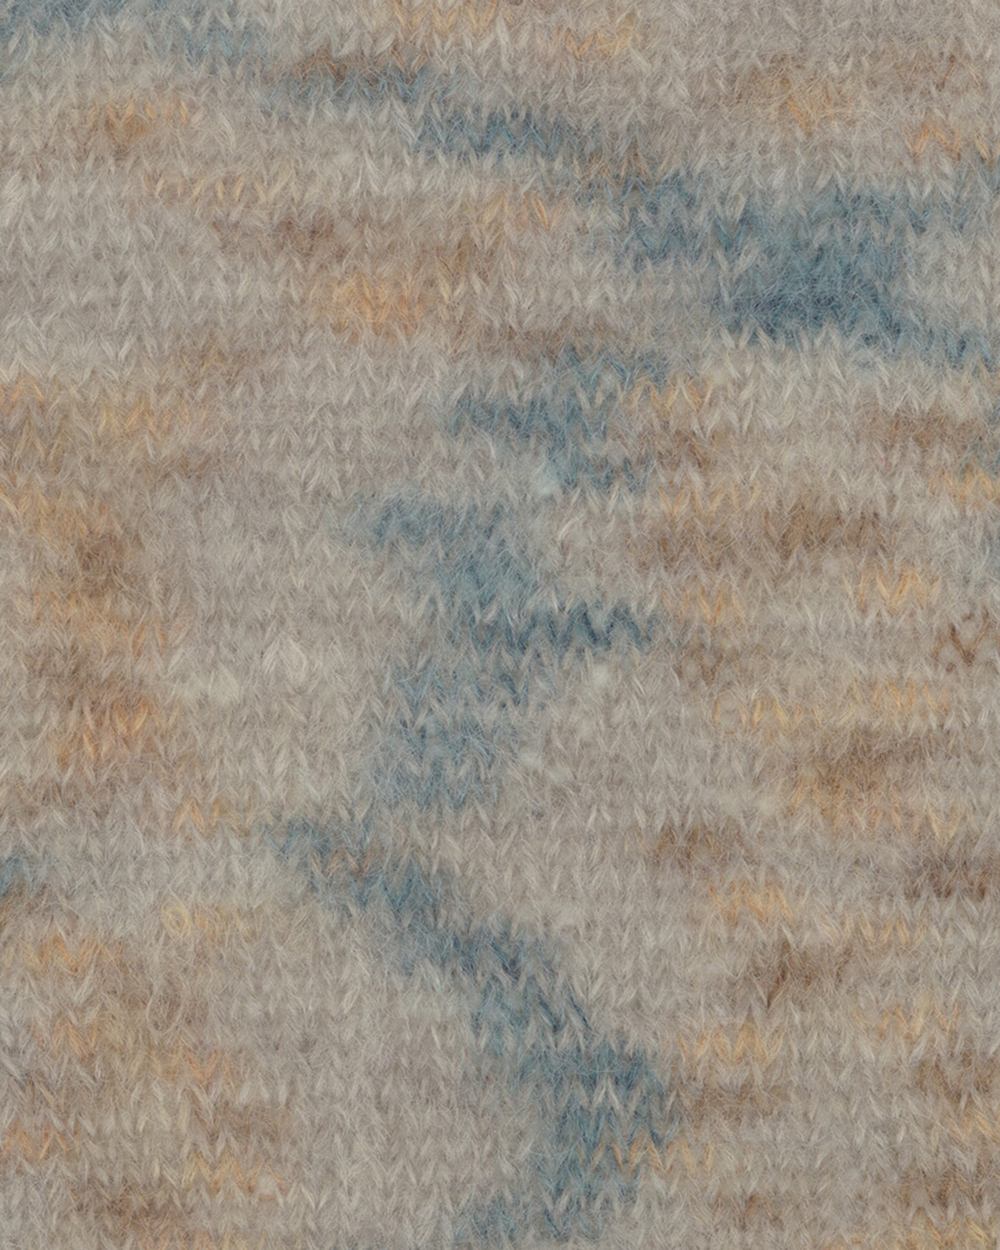 Пряжа для вязания Bella Color 883164, 75% мохер, 20% шерсть, 5% полиамид (50г 145м Дания)